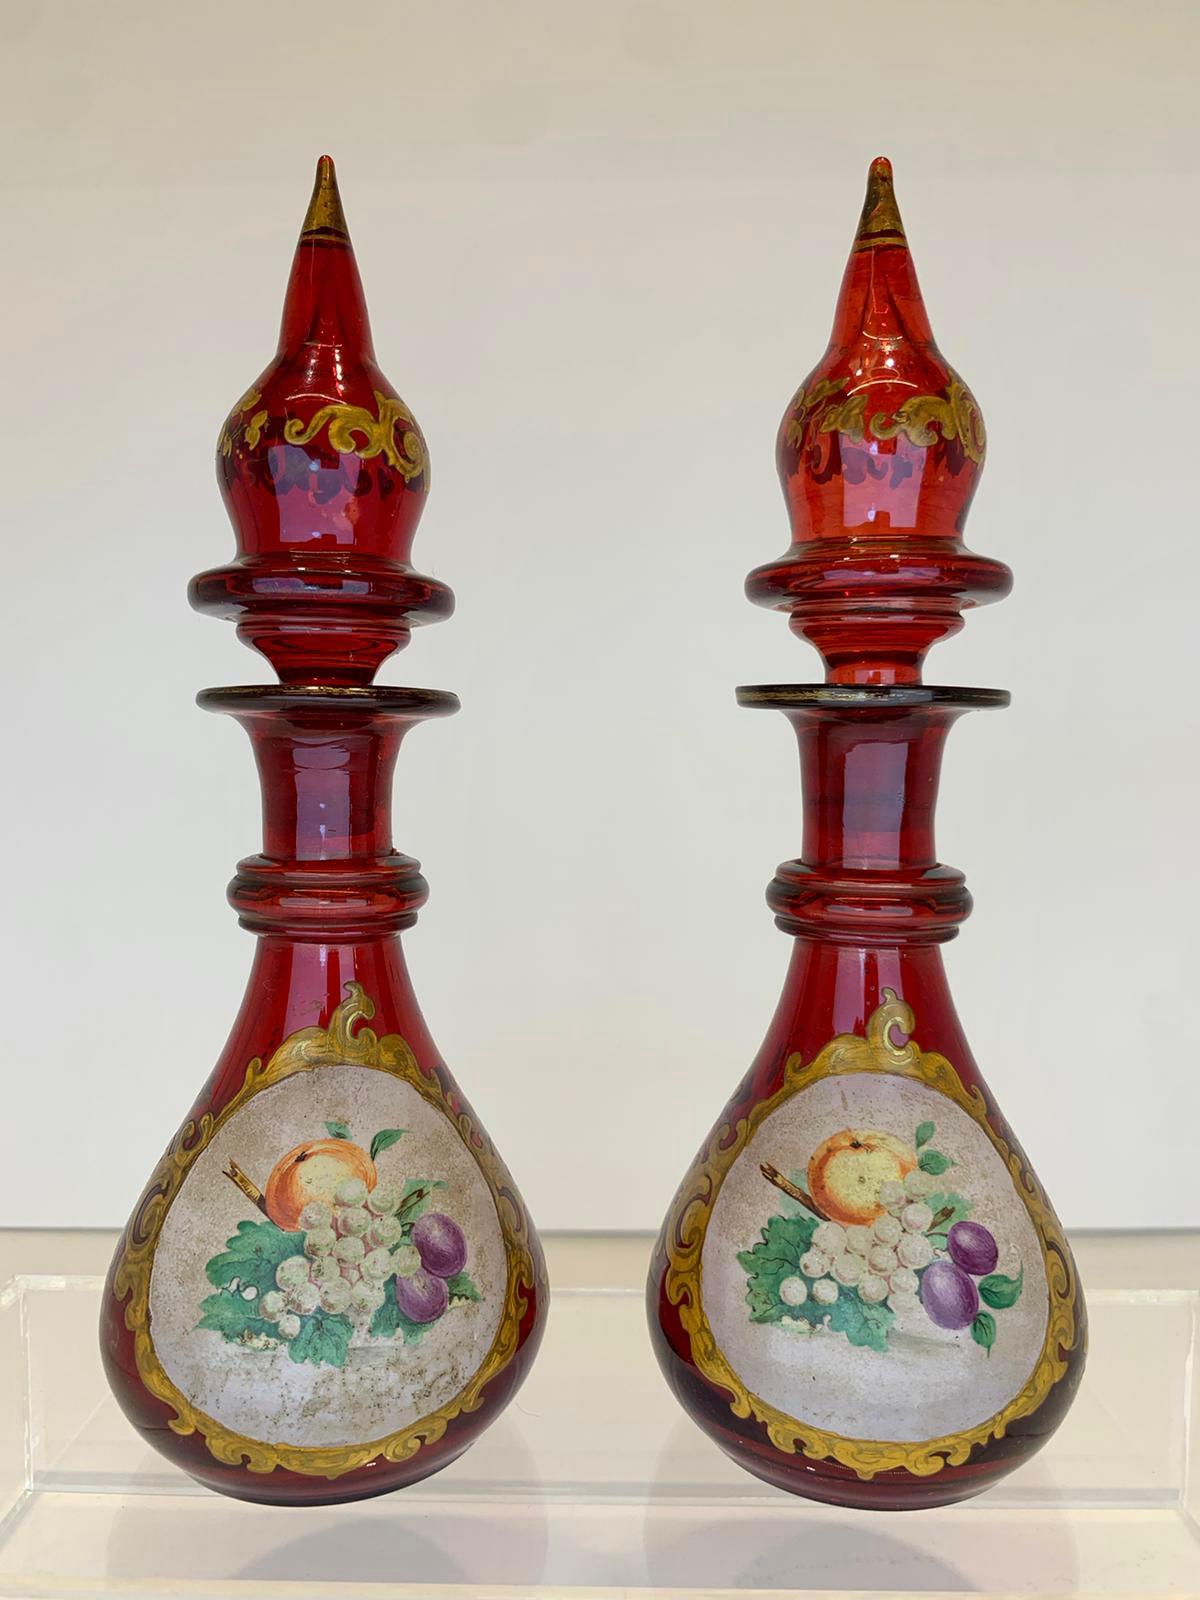 Flacons et bouchons de parfum en verre soufflé de Bohème de couleur rouge rubis
orné d'un décor émaillé et doré
verre opaque peint à la main avec des fruits colorés
Bohemia, 19e siècle.